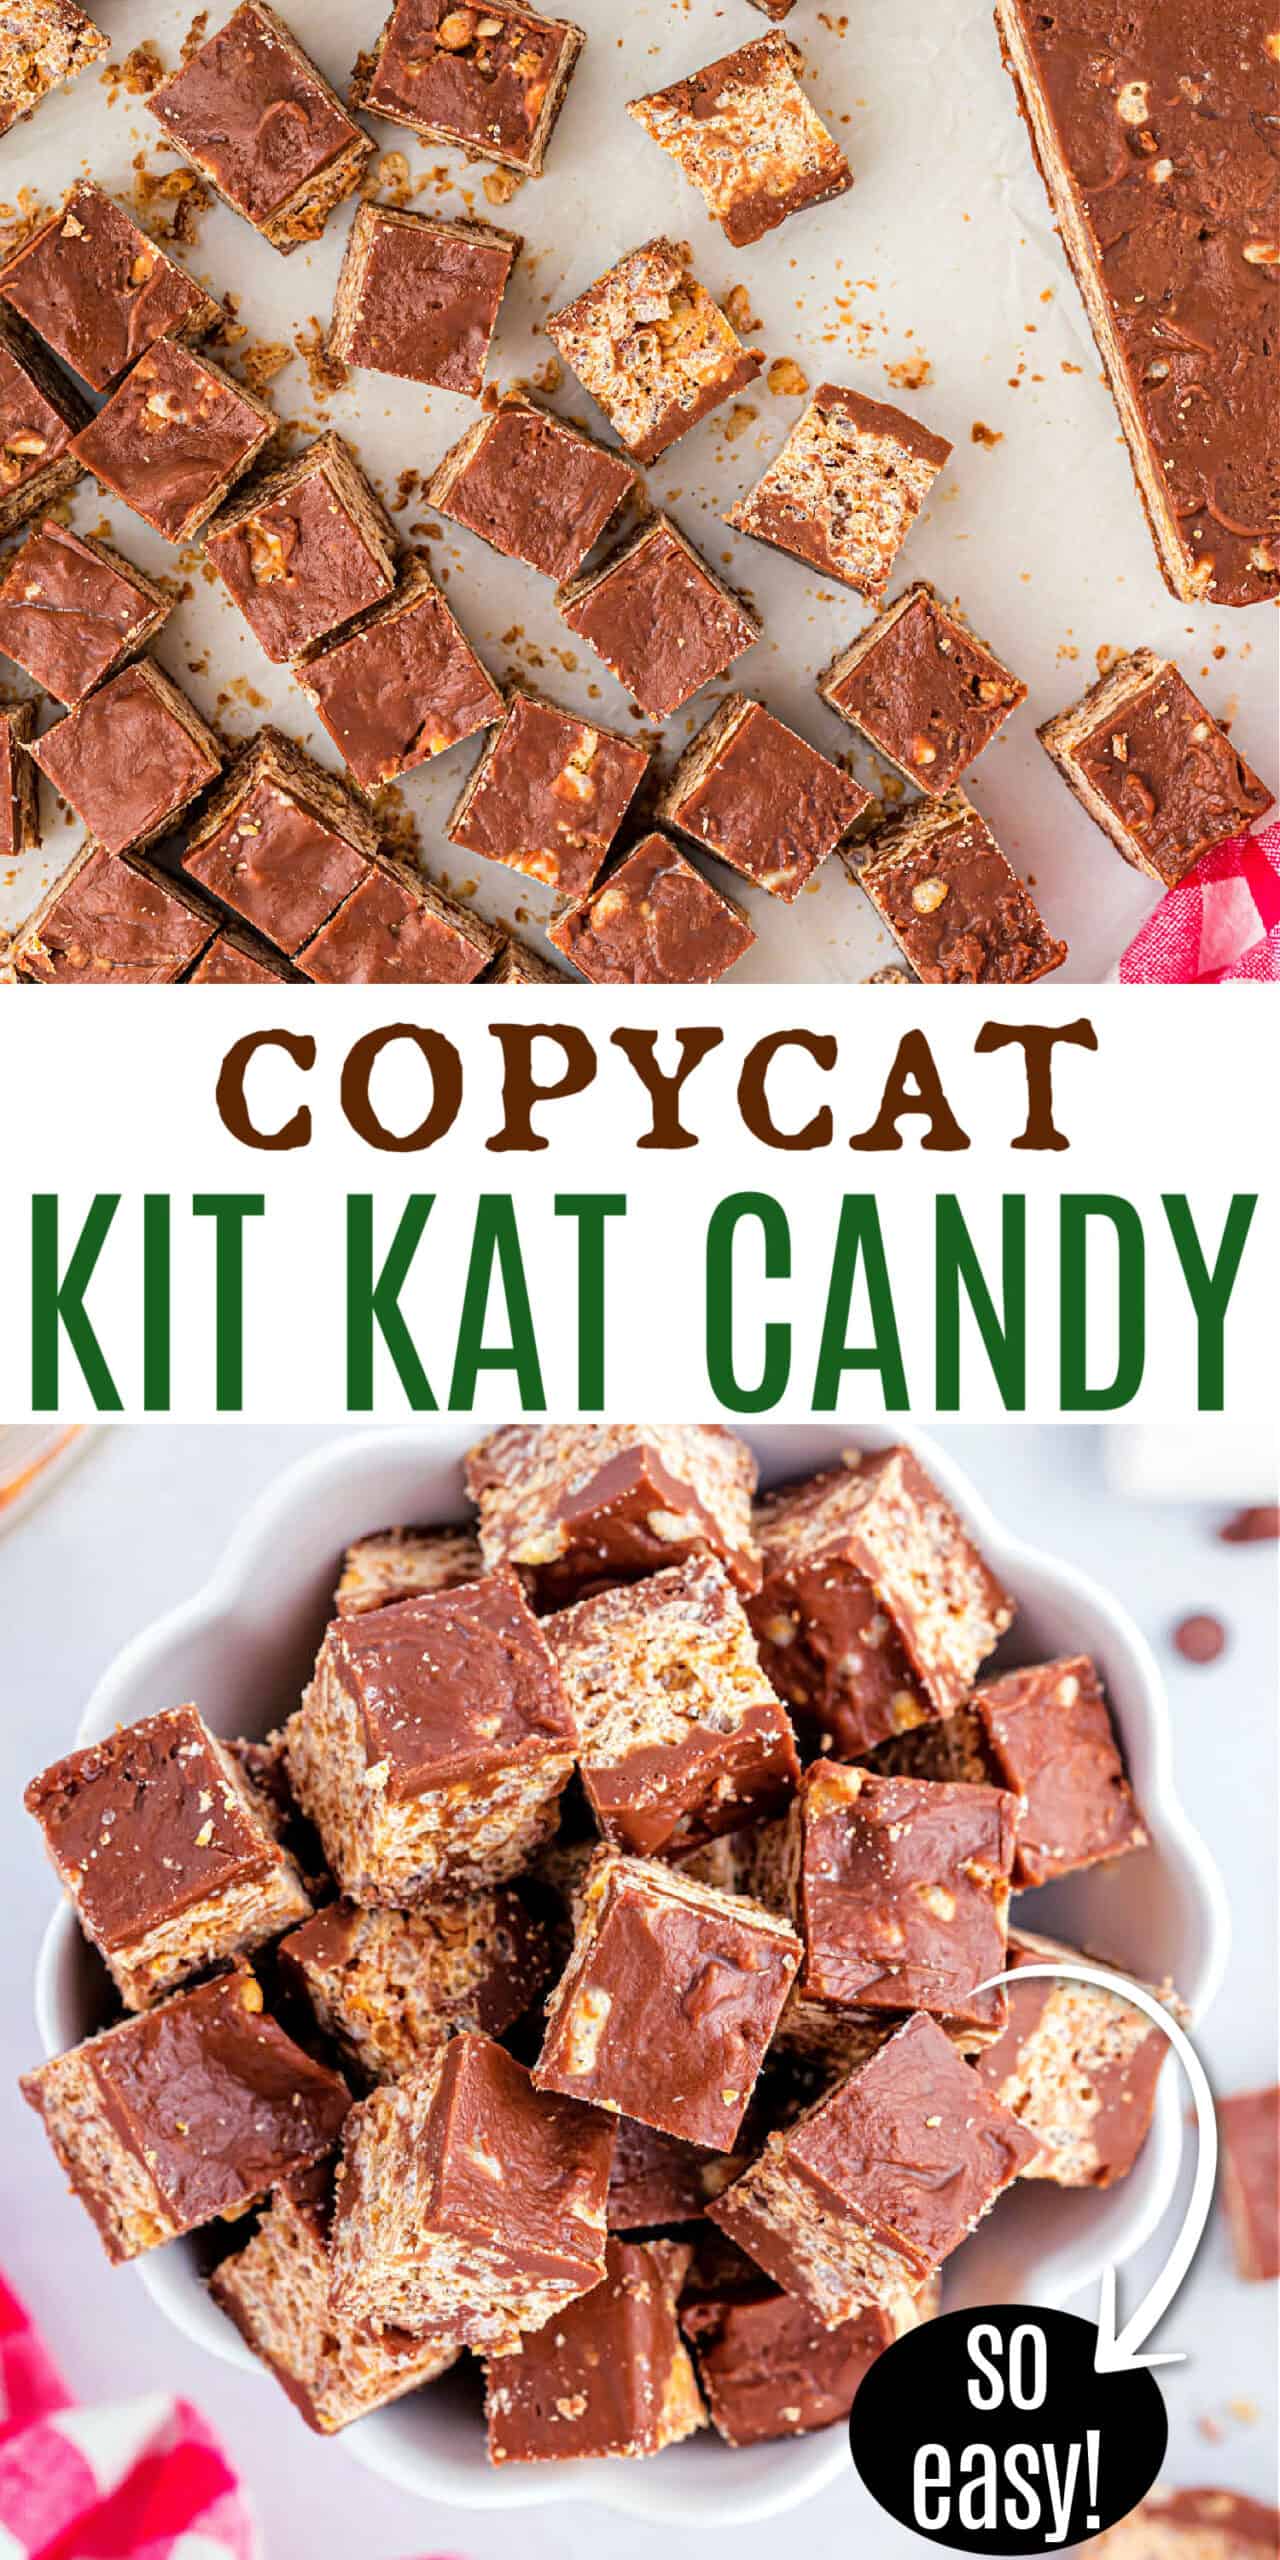 Homemade Kit Kat Candy Recipe - Flavorite